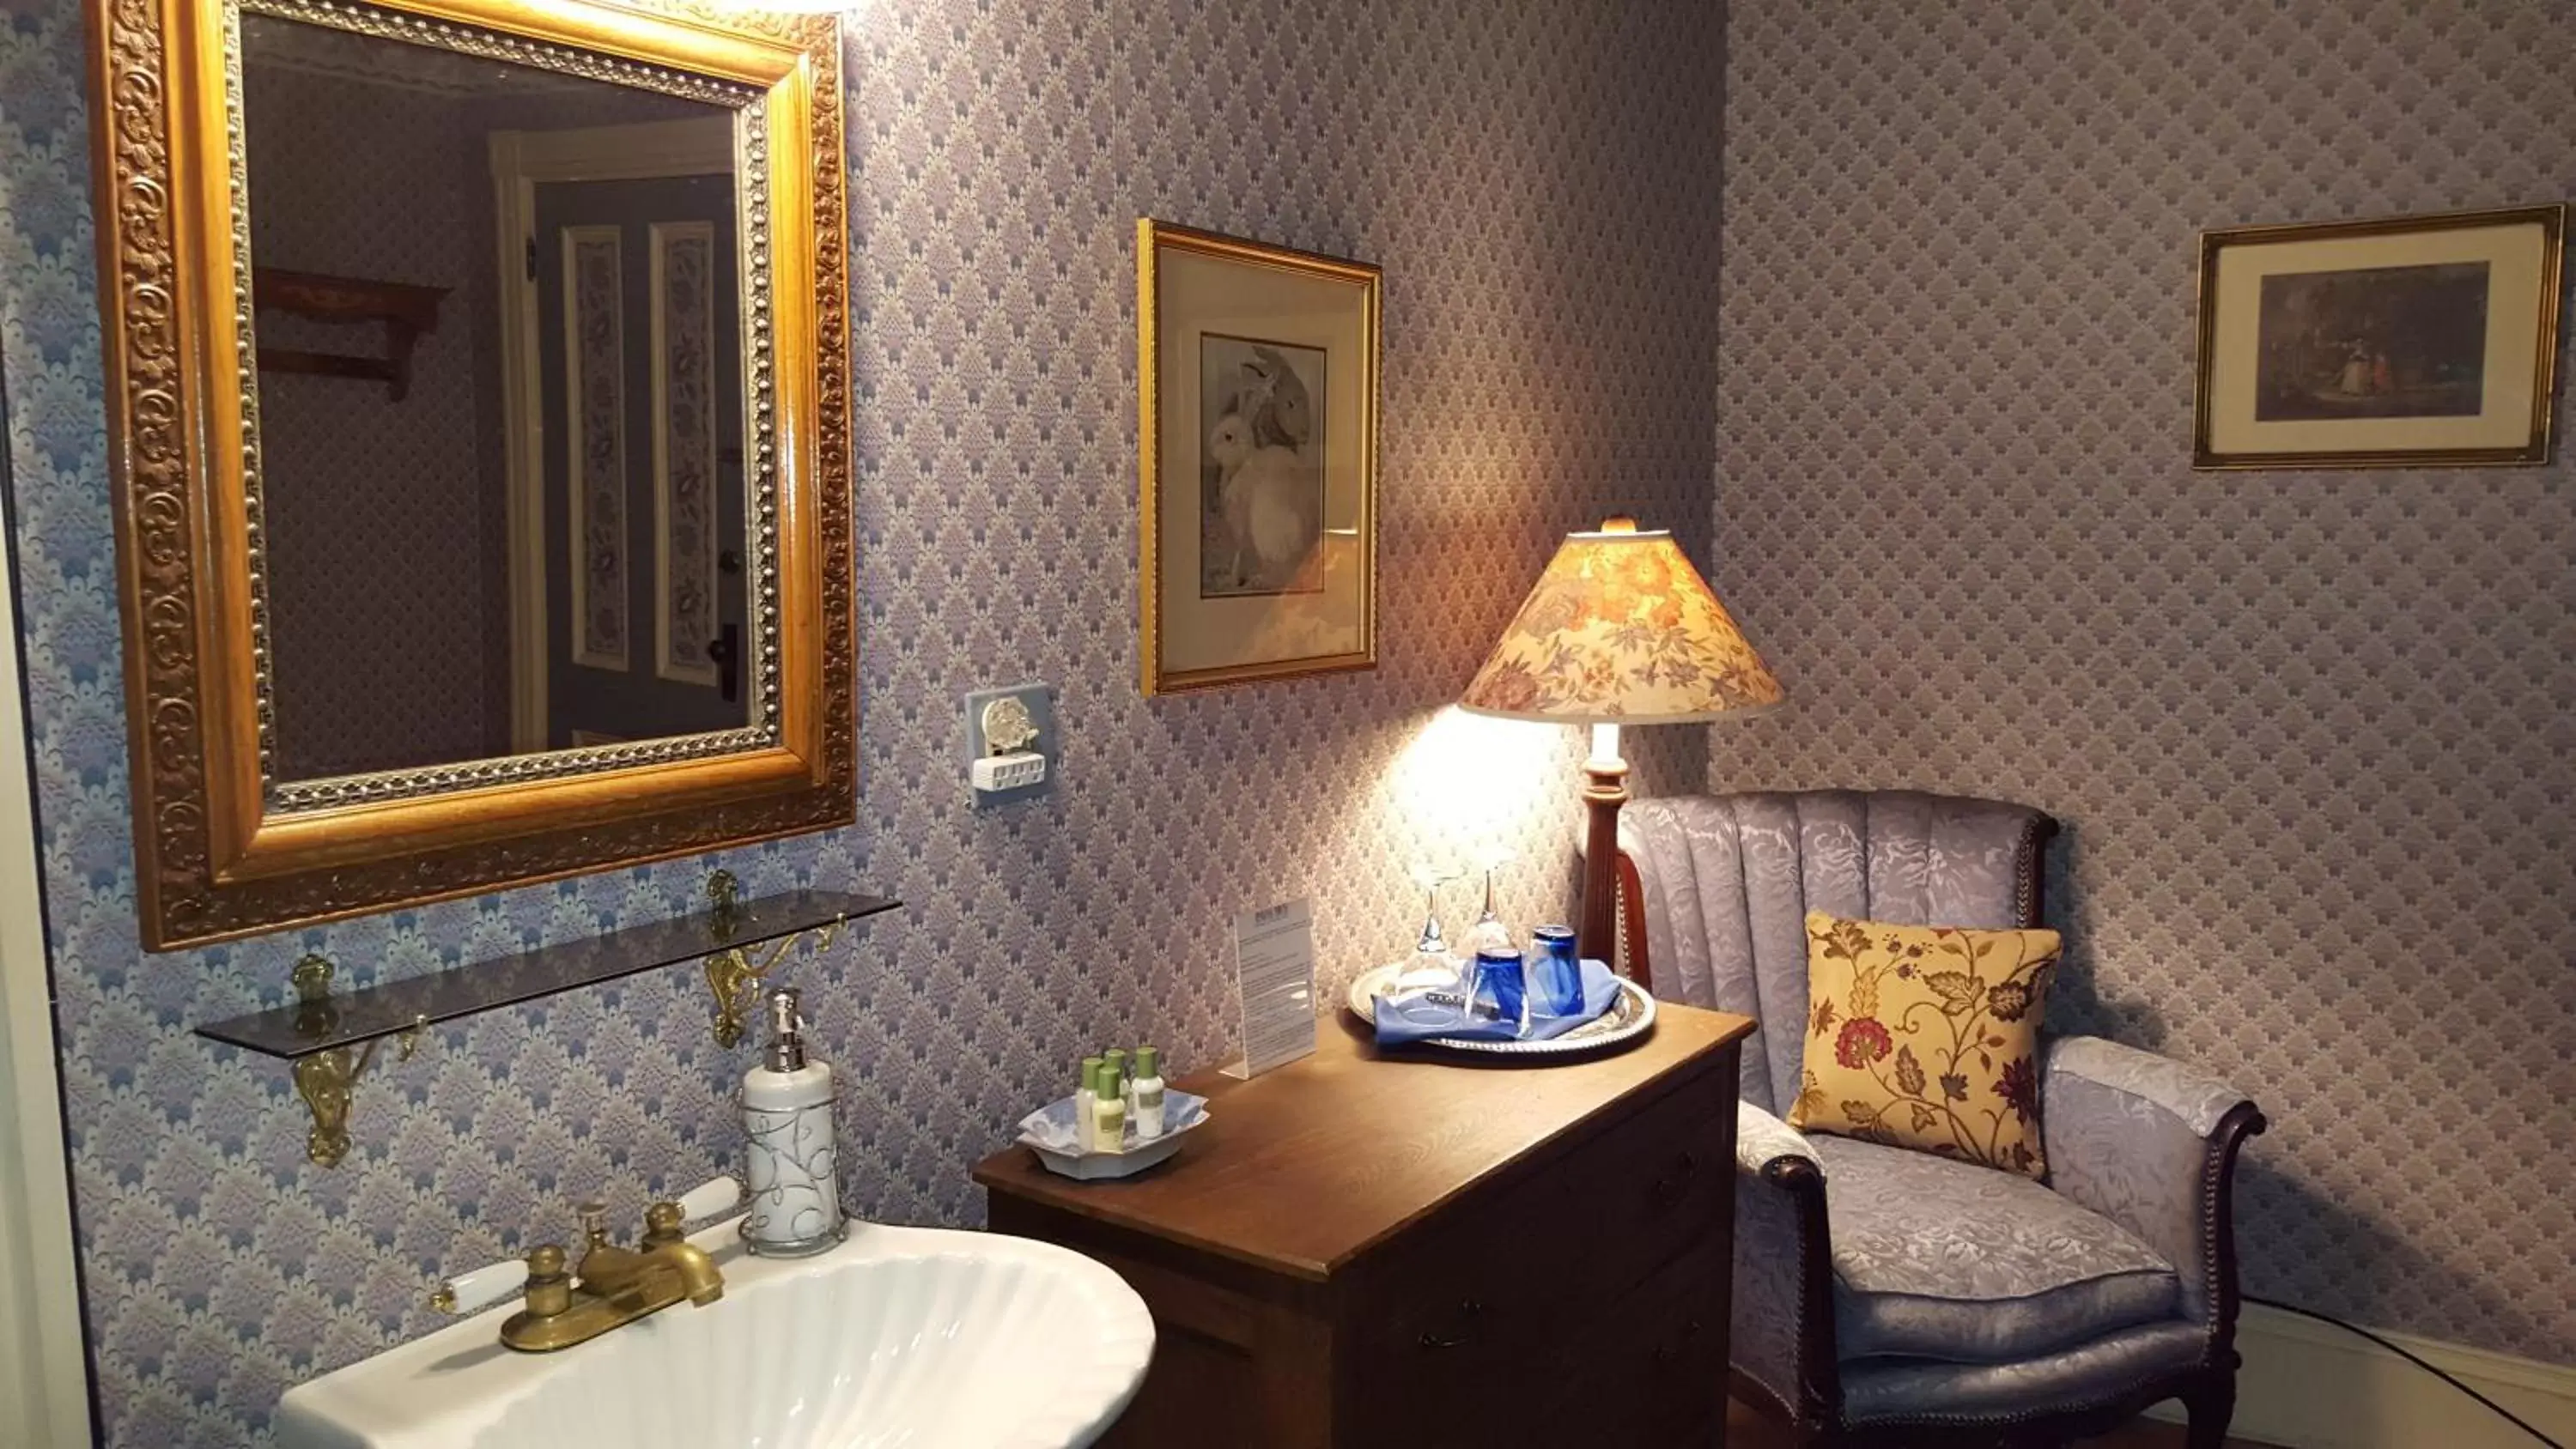 Bedroom, Bathroom in Holidae House Bed & Breakfast